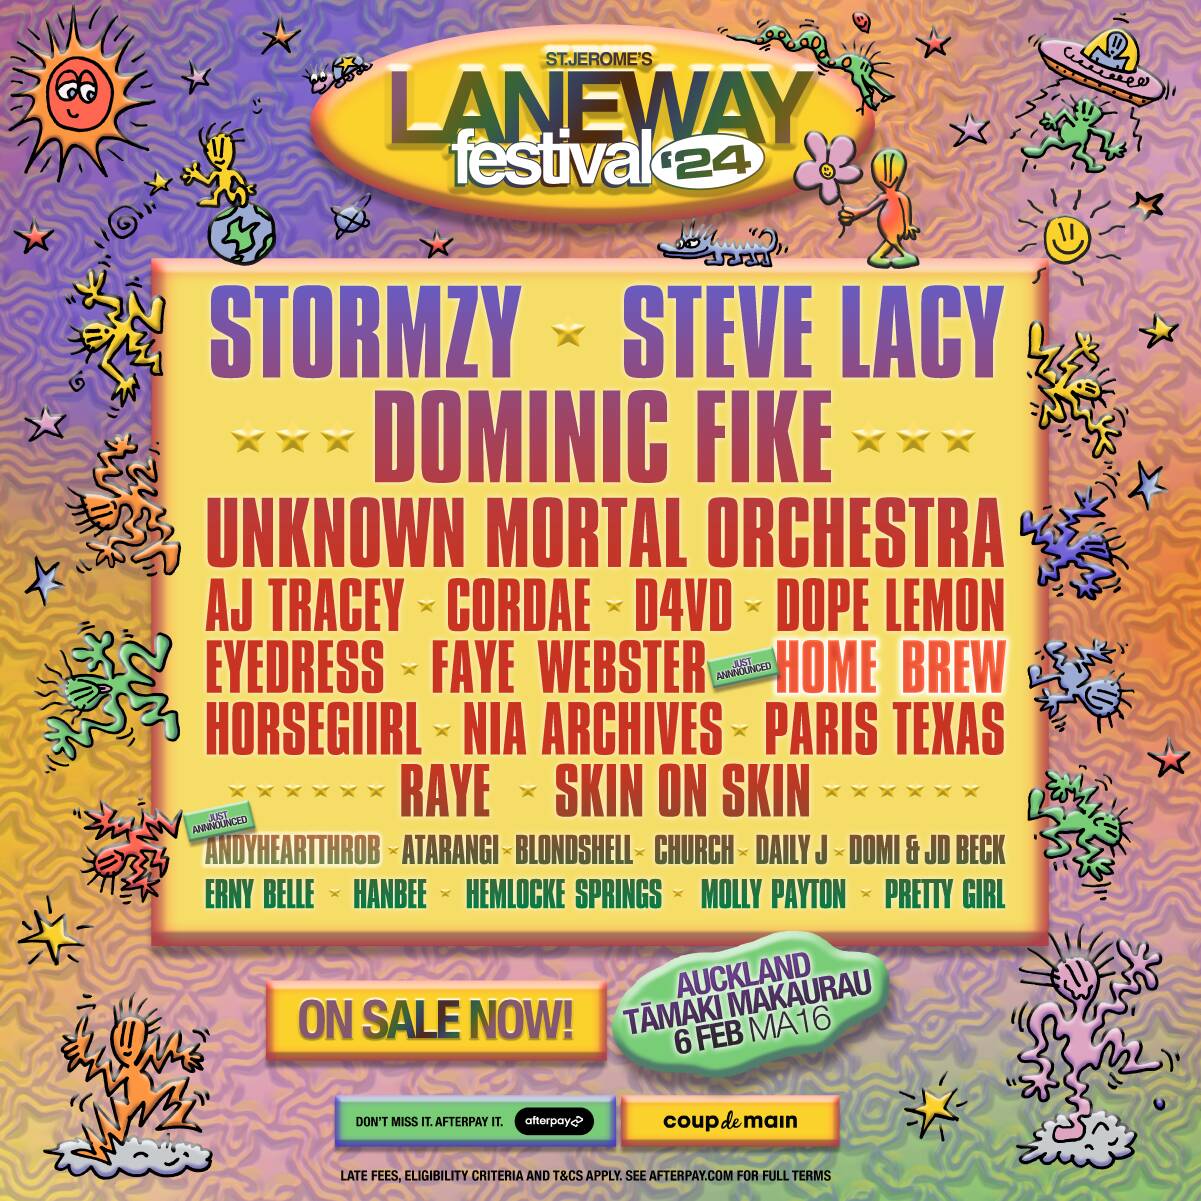 Laneway Festival 2024